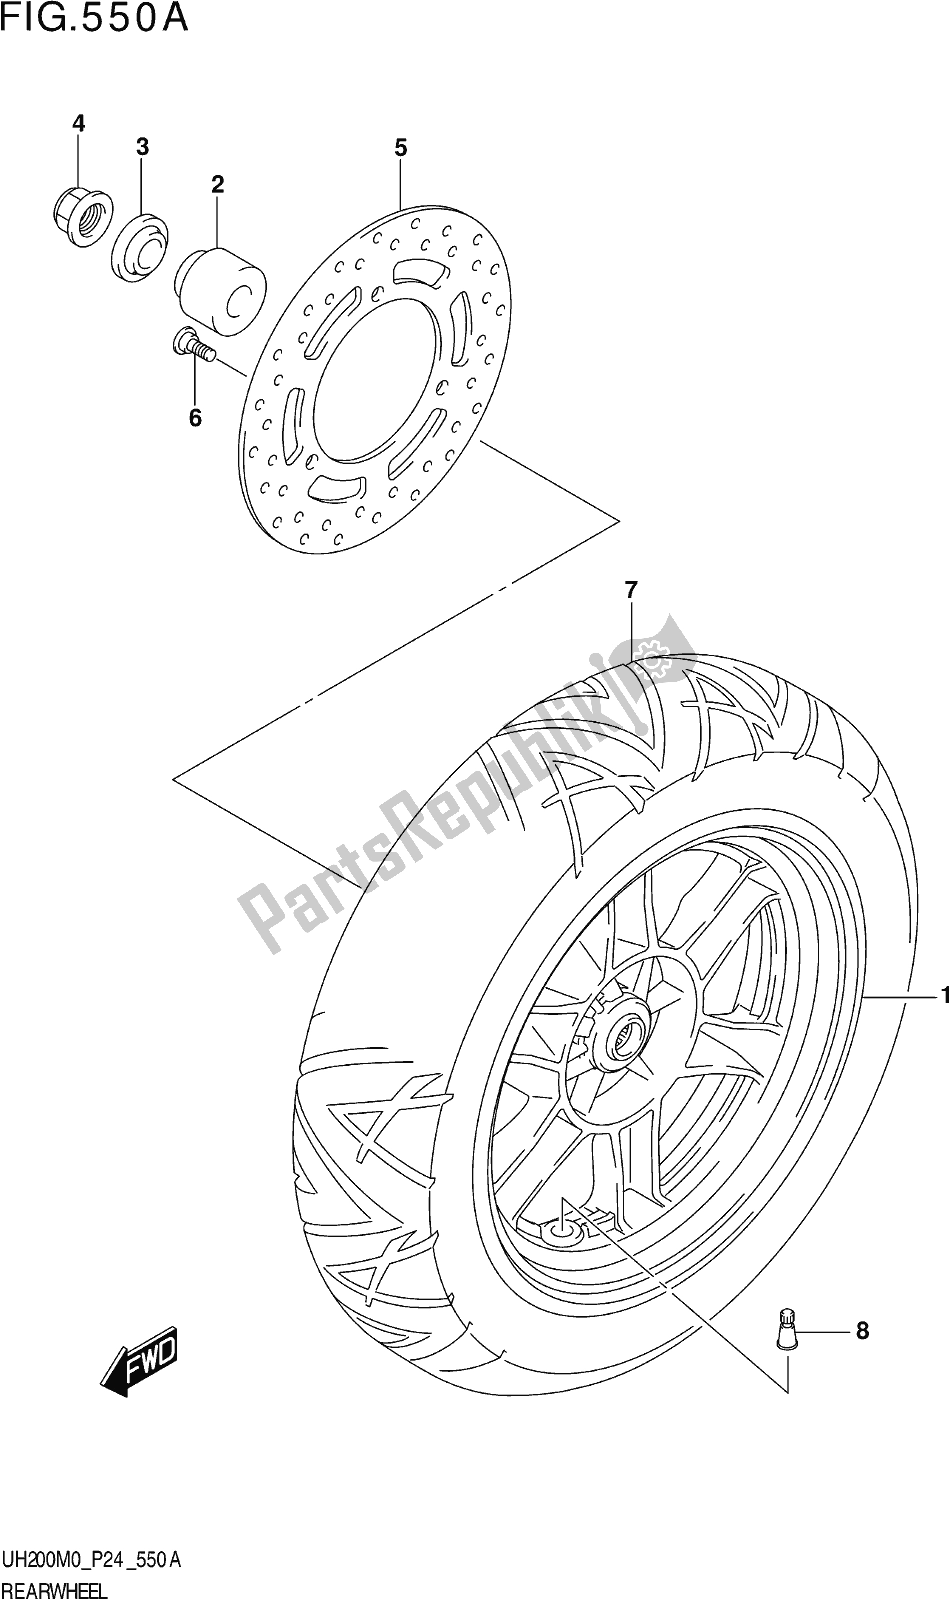 Toutes les pièces pour le Fig. 550a Rear Wheel du Suzuki UH 200 2020